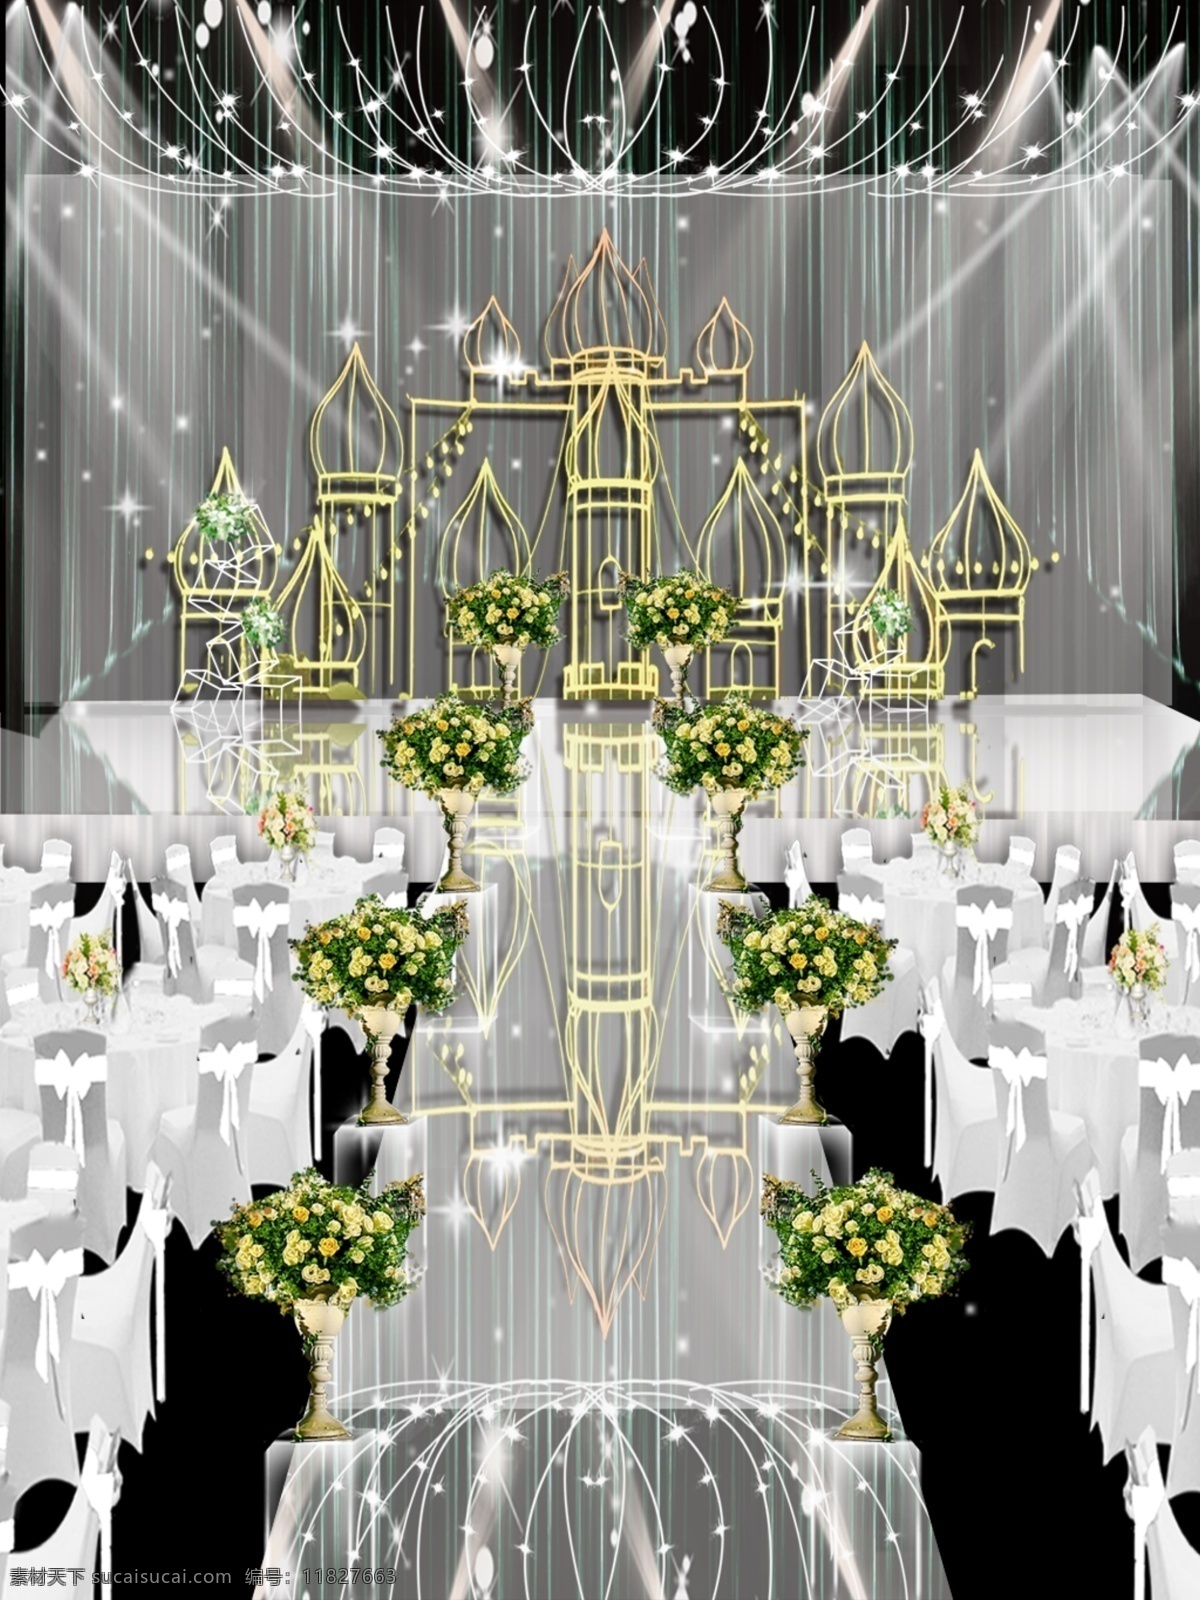 梦幻 城堡 彩灯 高雅 婚礼 效果图 鲜花 高端 婚礼效果图 分层 源文件